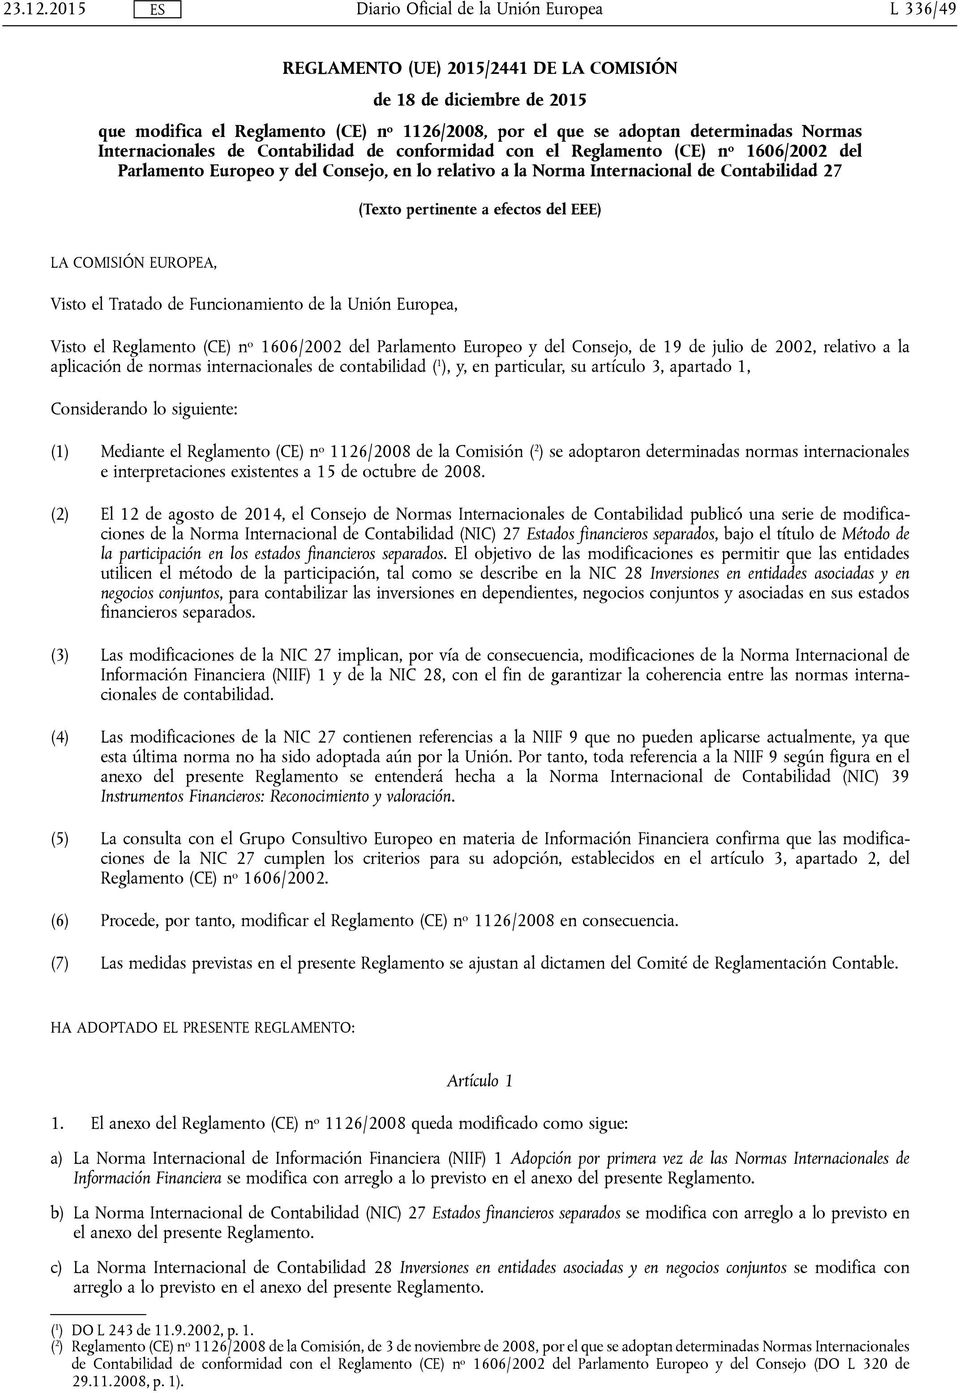 Contabilidad de conformidad con el Reglamento (CE) n o 1606/2002 del Parlamento Europeo y del Consejo, en lo relativo a la Norma Internacional de Contabilidad 27 (Texto pertinente a efectos del EEE)